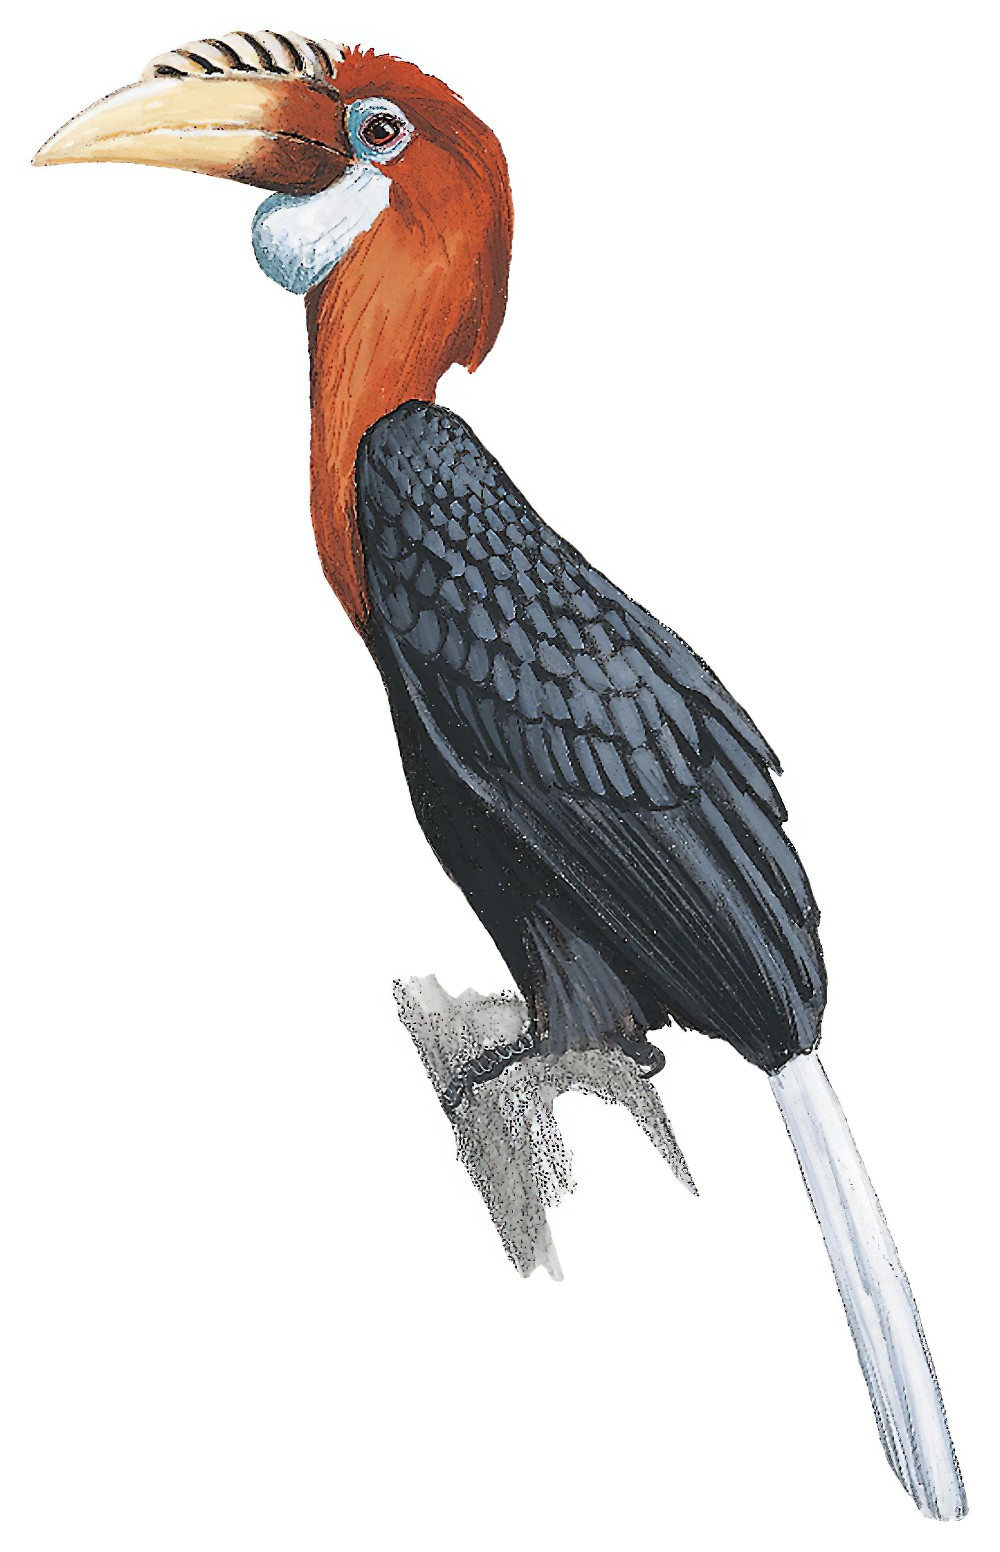 Narcondam Hornbill / Rhyticeros narcondami